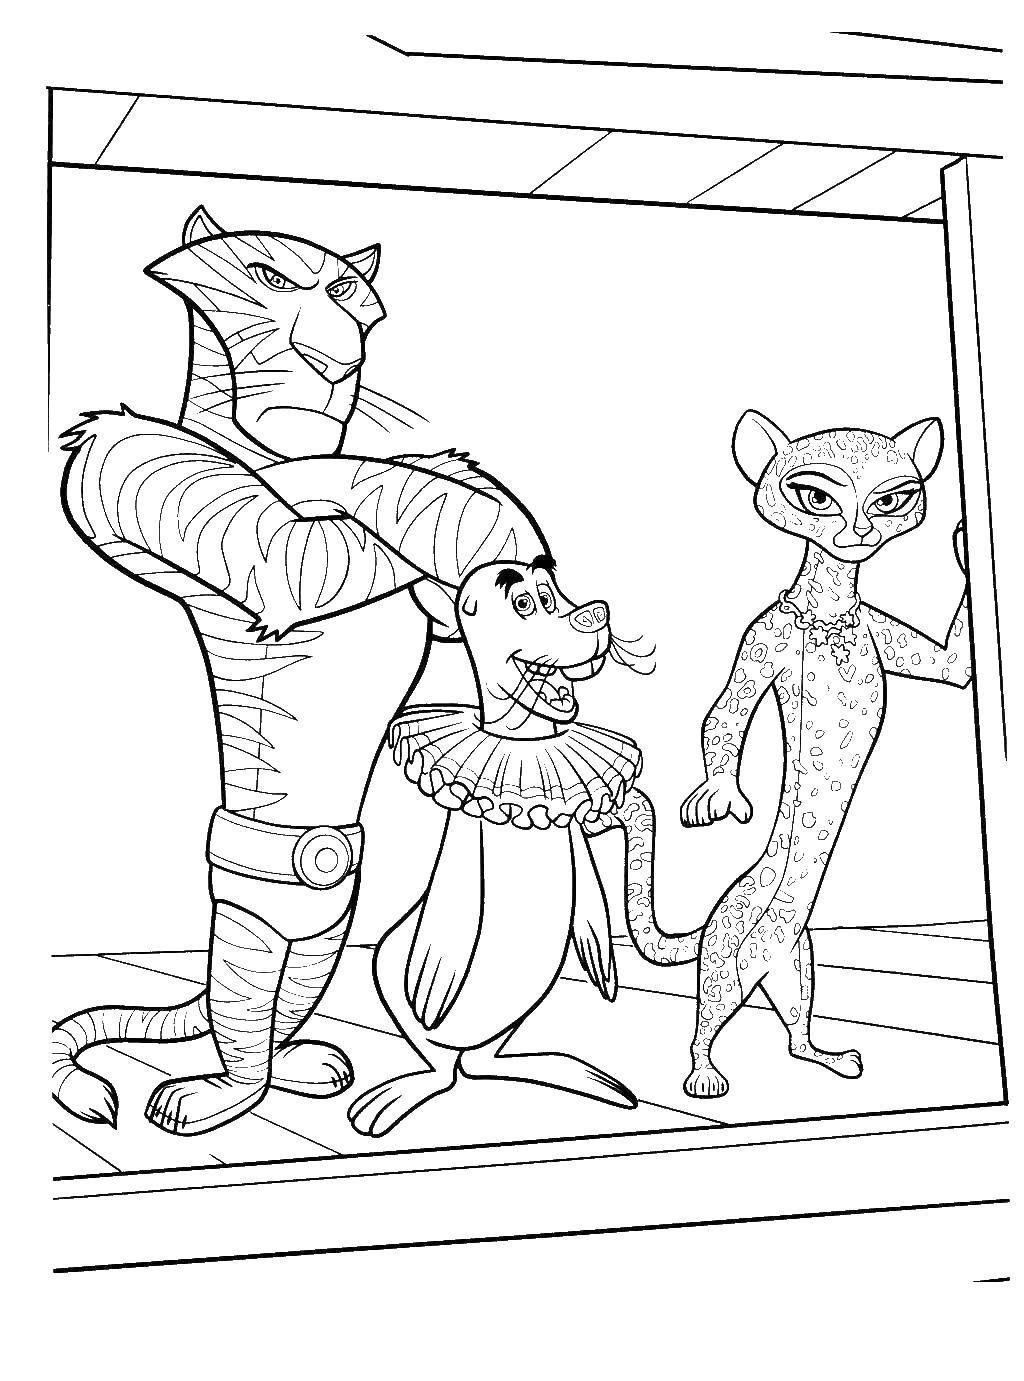 Розмальовки  Цирковий потяг з тваринами. Завантажити розмальовку Мадагаскар, Алекс.  Роздрукувати ,мадагаскар,